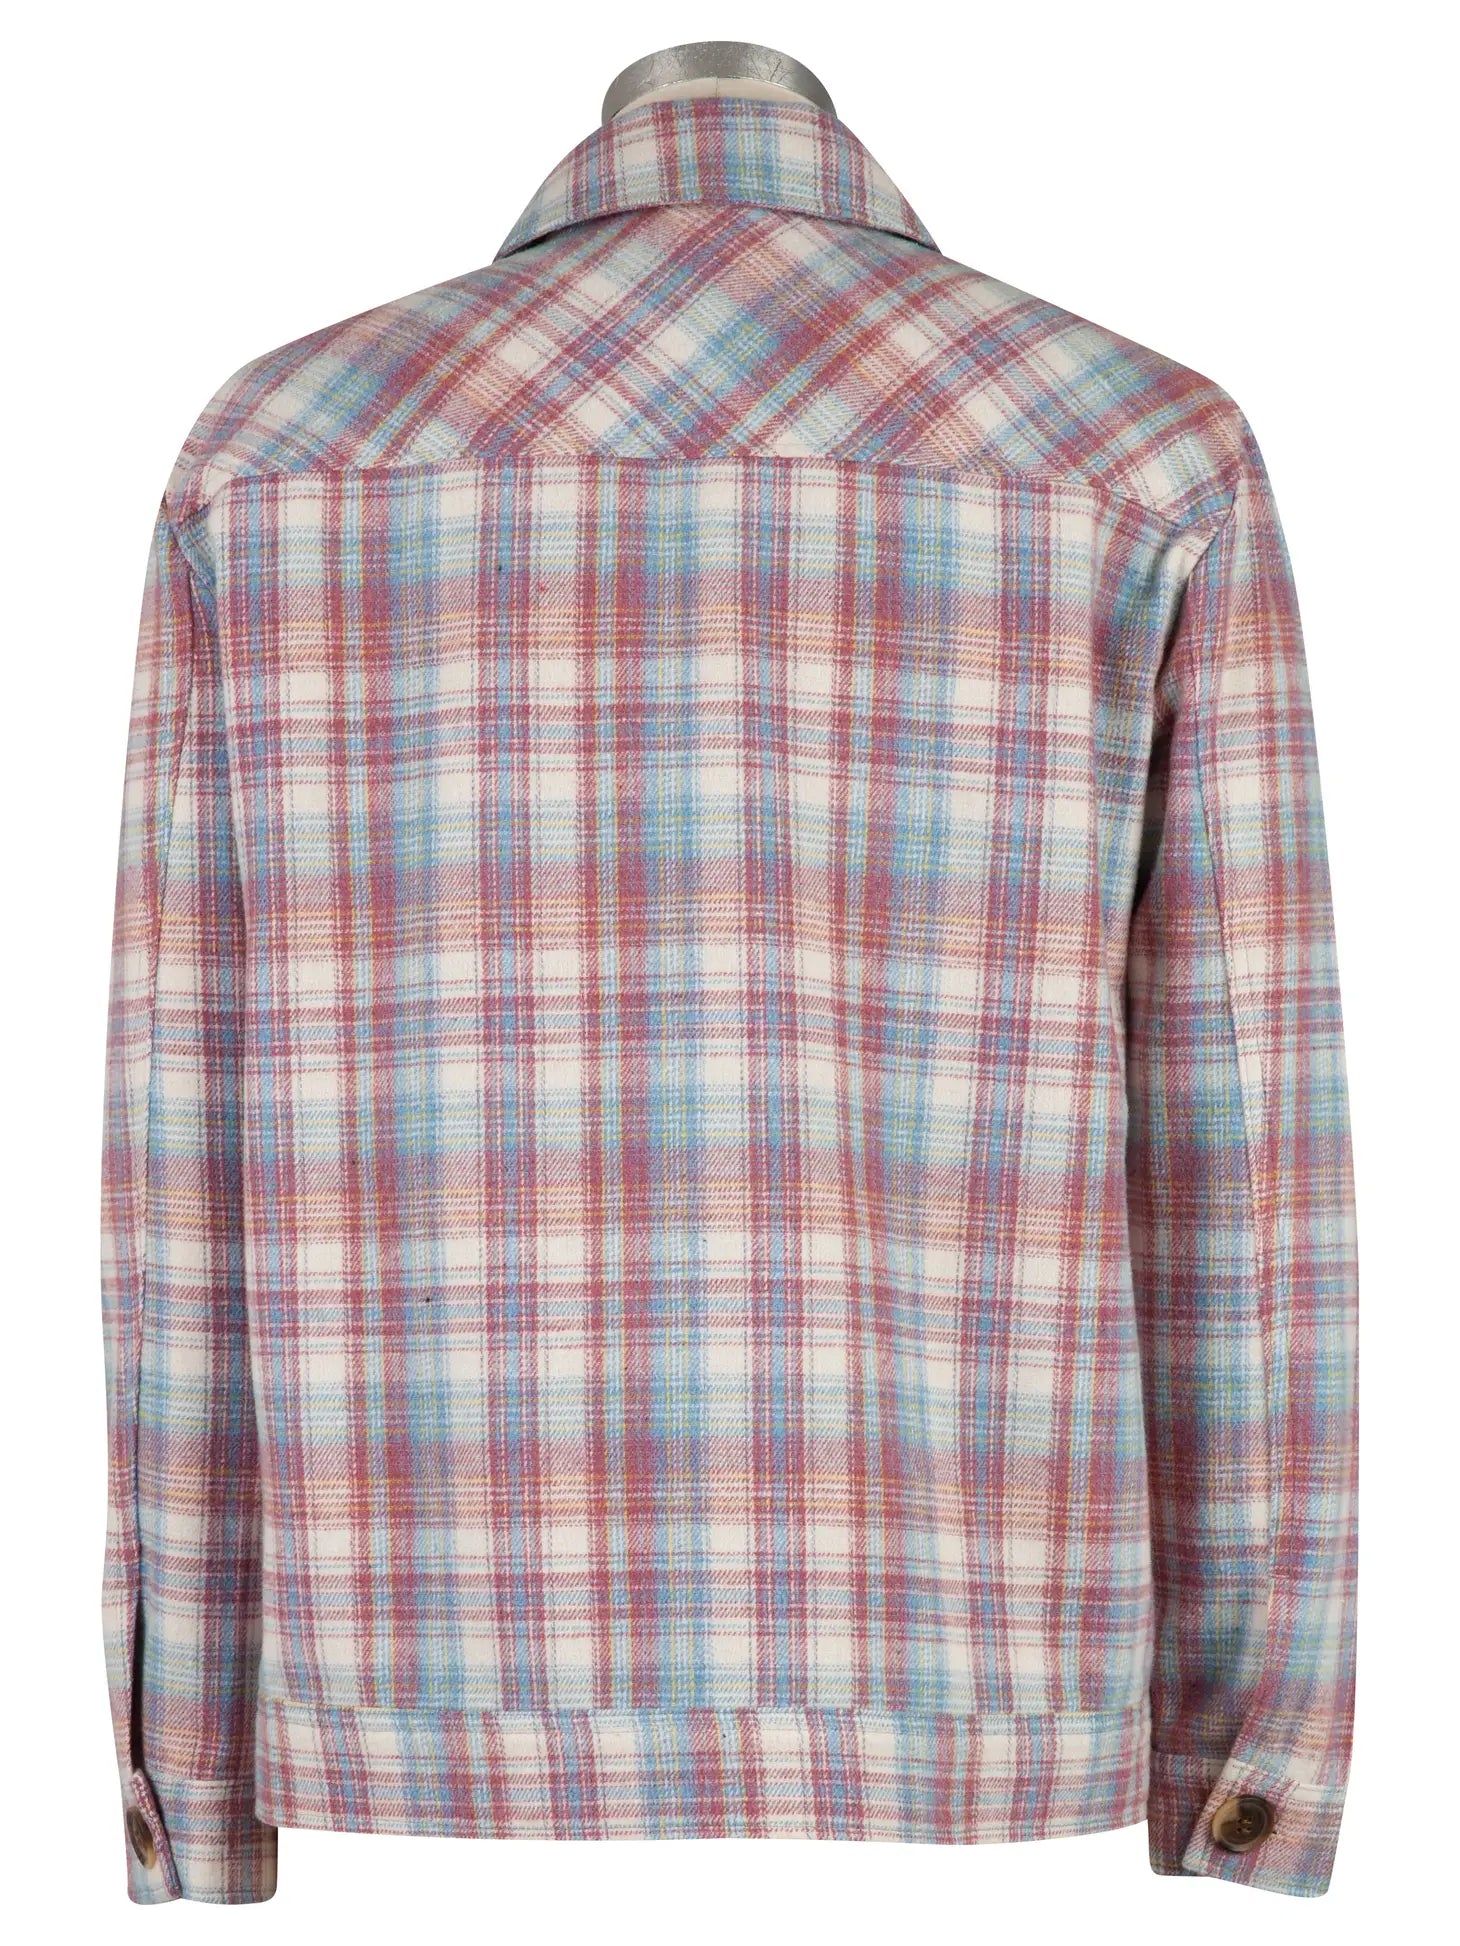 KUT - Magnolia Plaid Shirt/Jacket